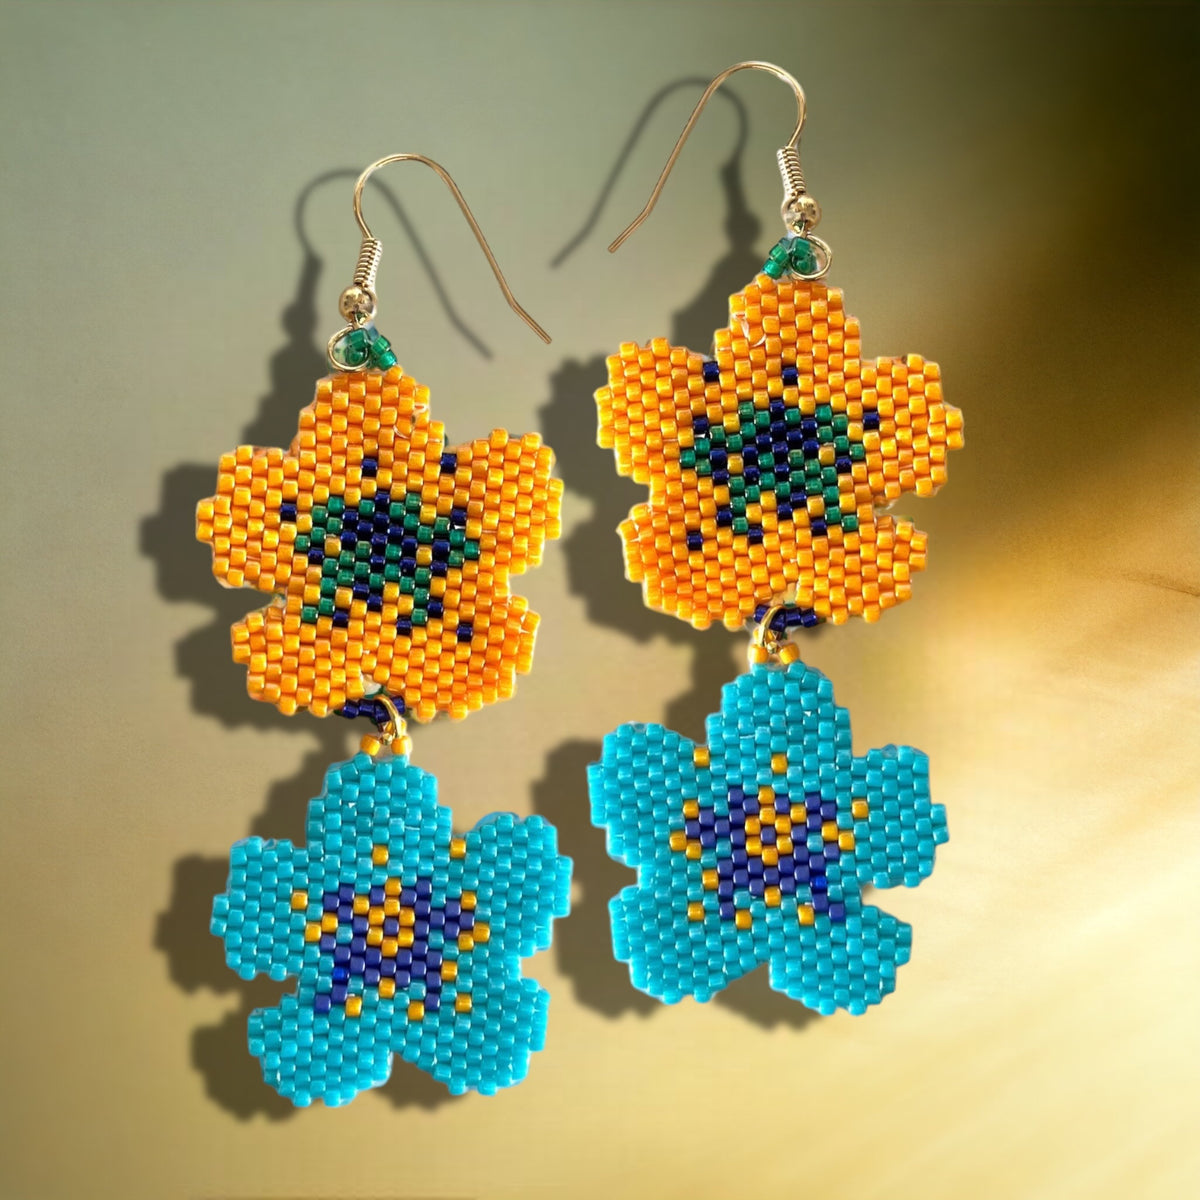 diy-pendant-pattern-miyuki-beads-brick-stitch-weaving-allamanda